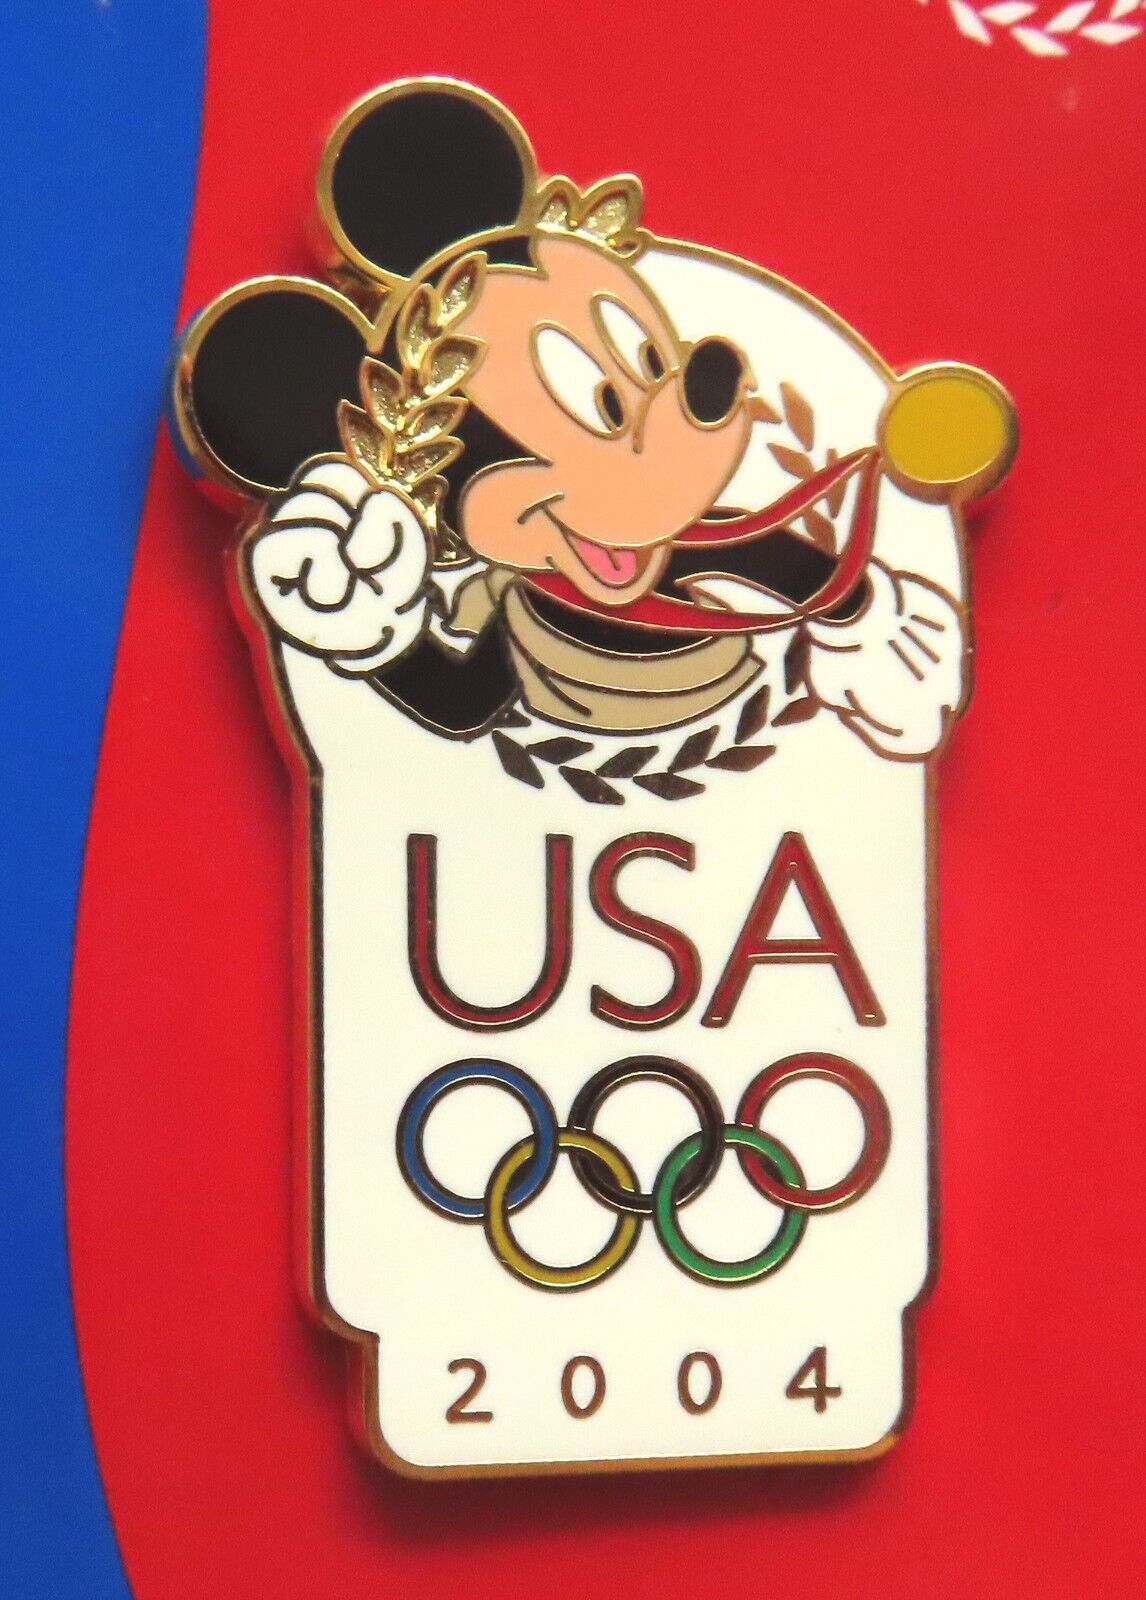 2004 Olympics Disney pin: USA Olympic Logo - Mickey Mouse